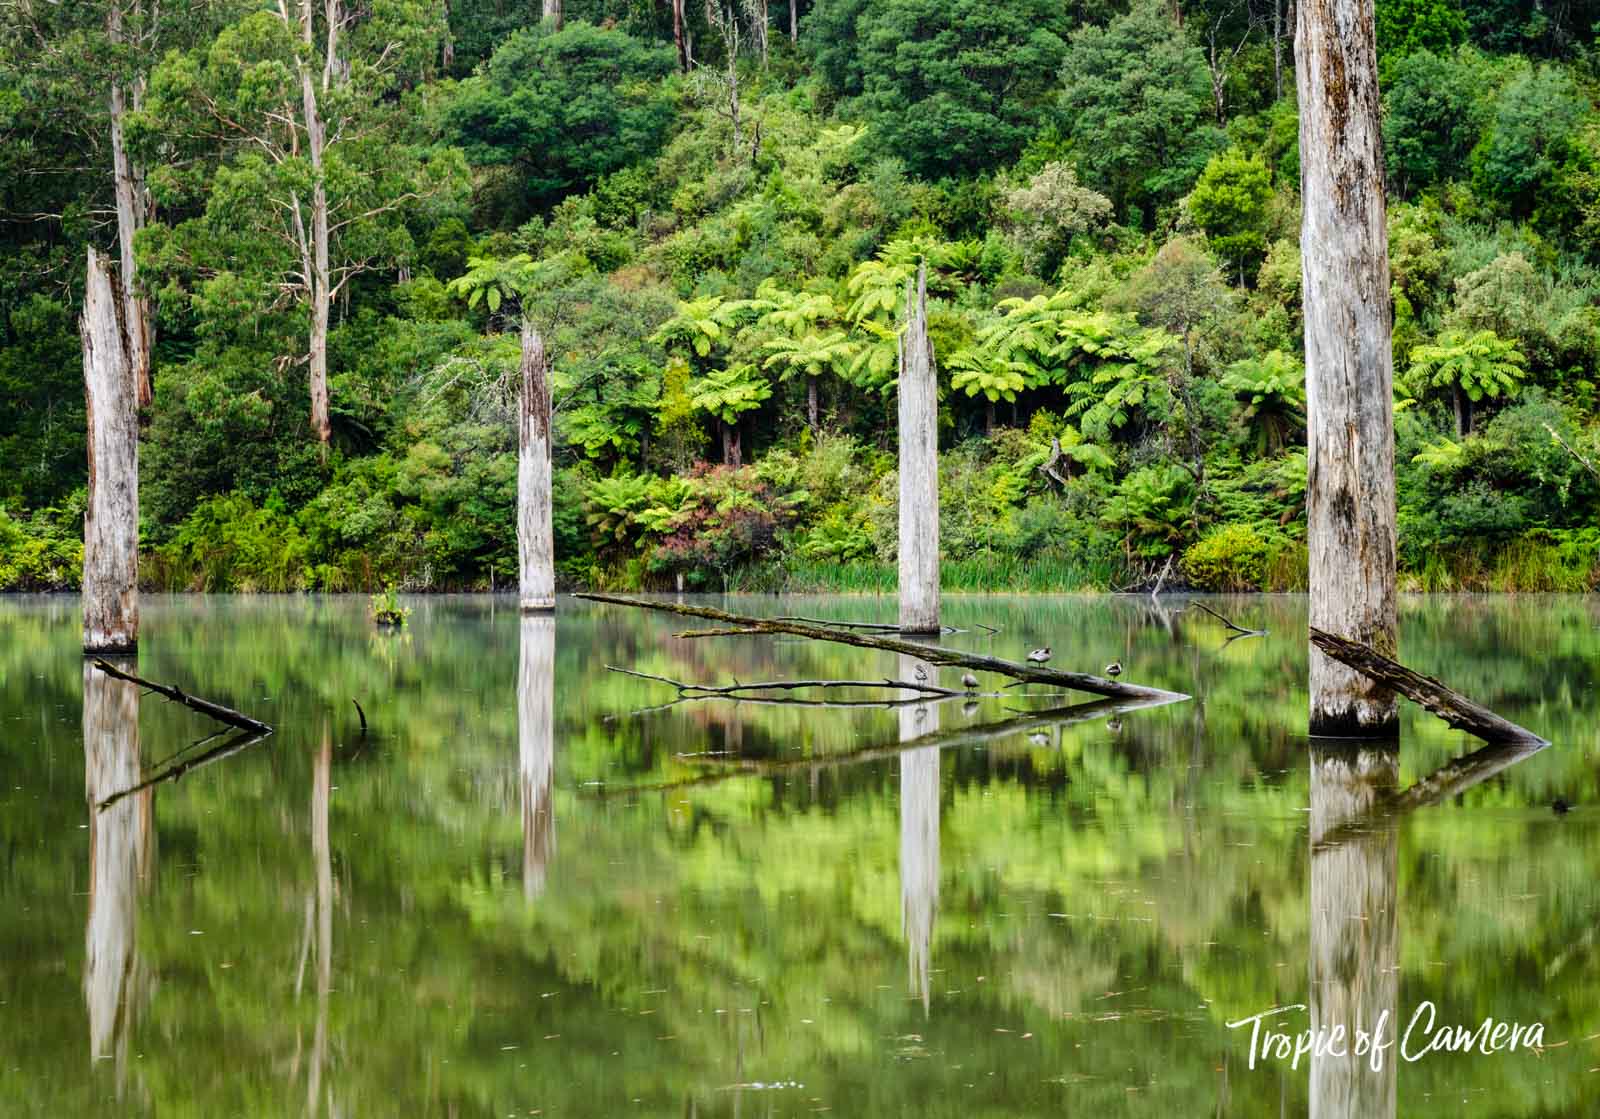 Dead eucalyptus trees reflected in Lake Elizabeth, Australia